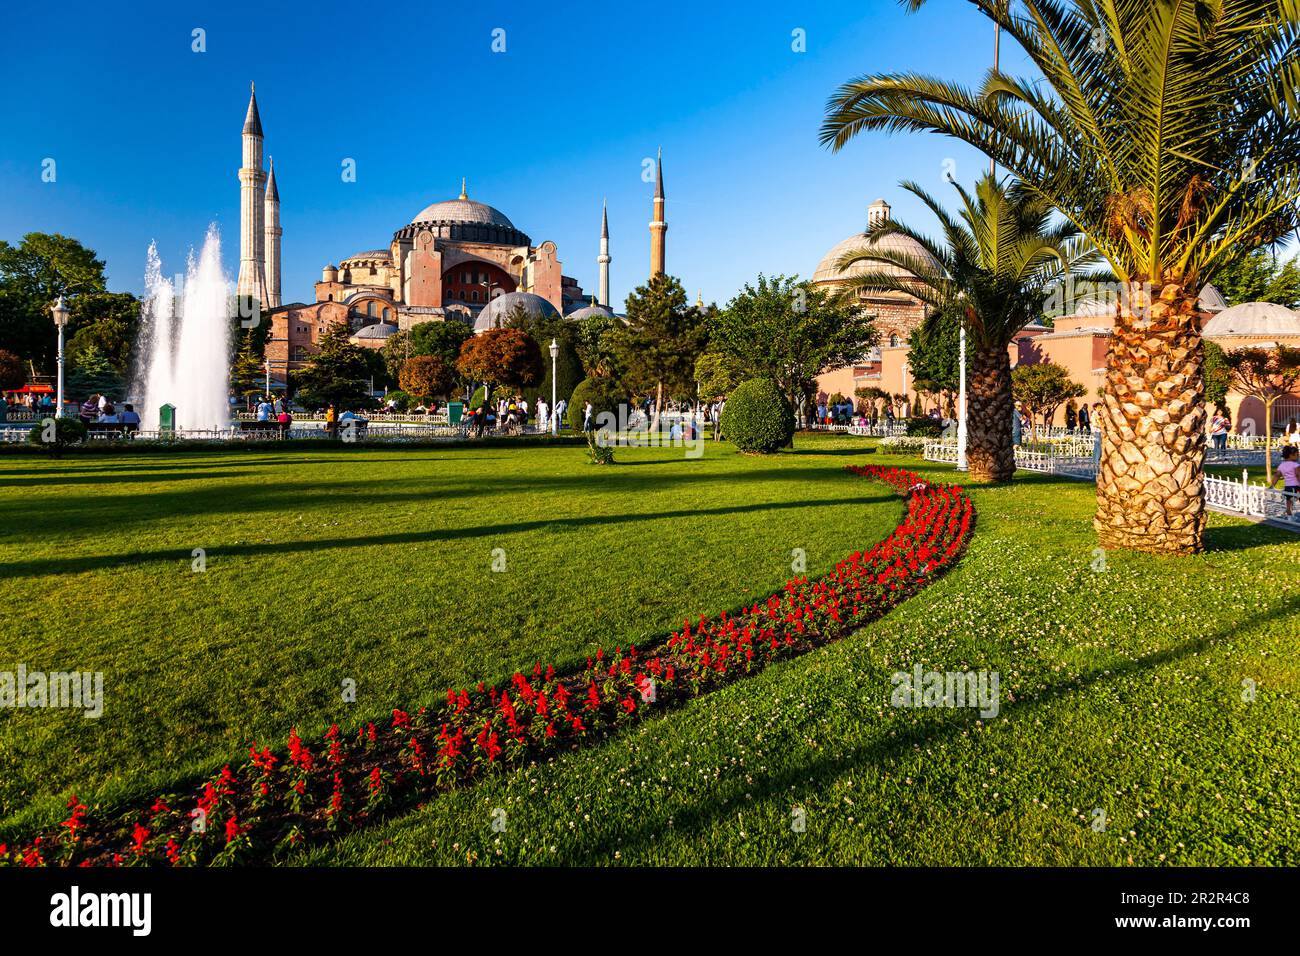 Sainte-Sophie (Aya sofia), Parc du Sultan Ahmet, matin, quartiers historiques d'Istanbul, place Sultanahmet, Istanbul, Turquie Banque D'Images